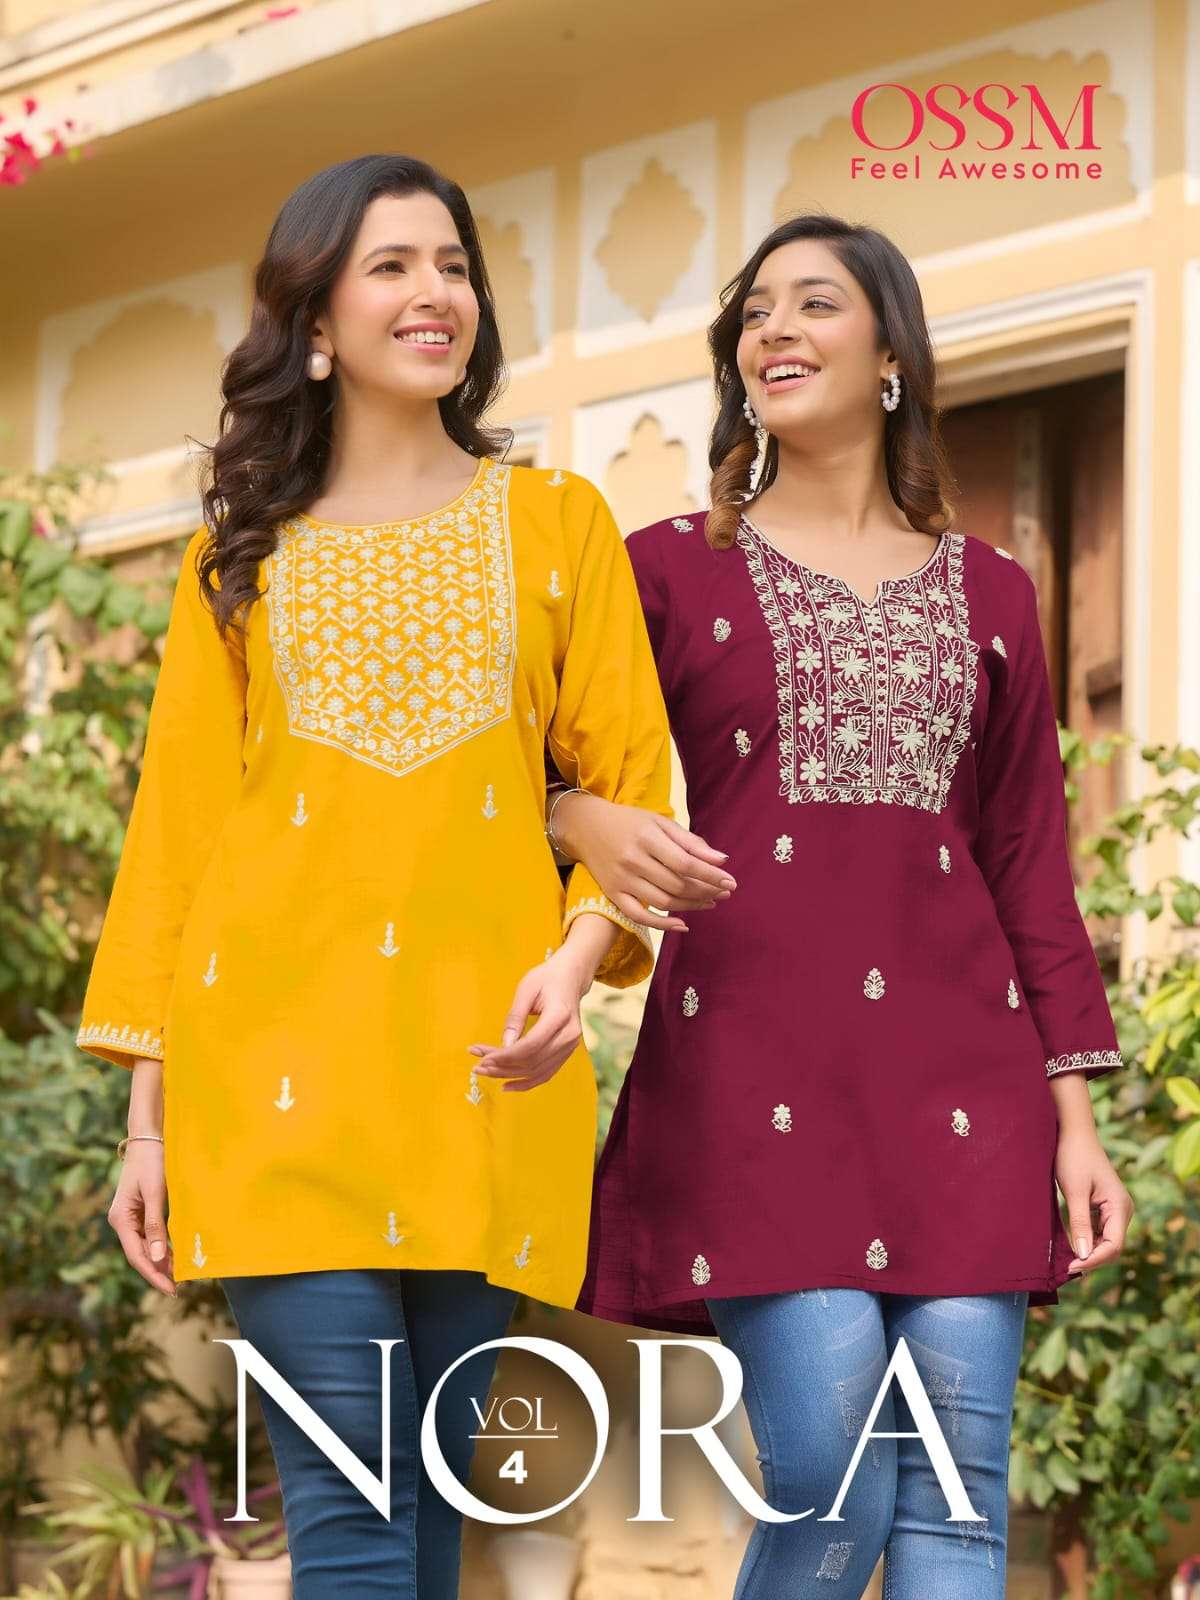 Ossm Nora Vol 4 Heavy Rayon Short Tops Online Store Dealers In Surat